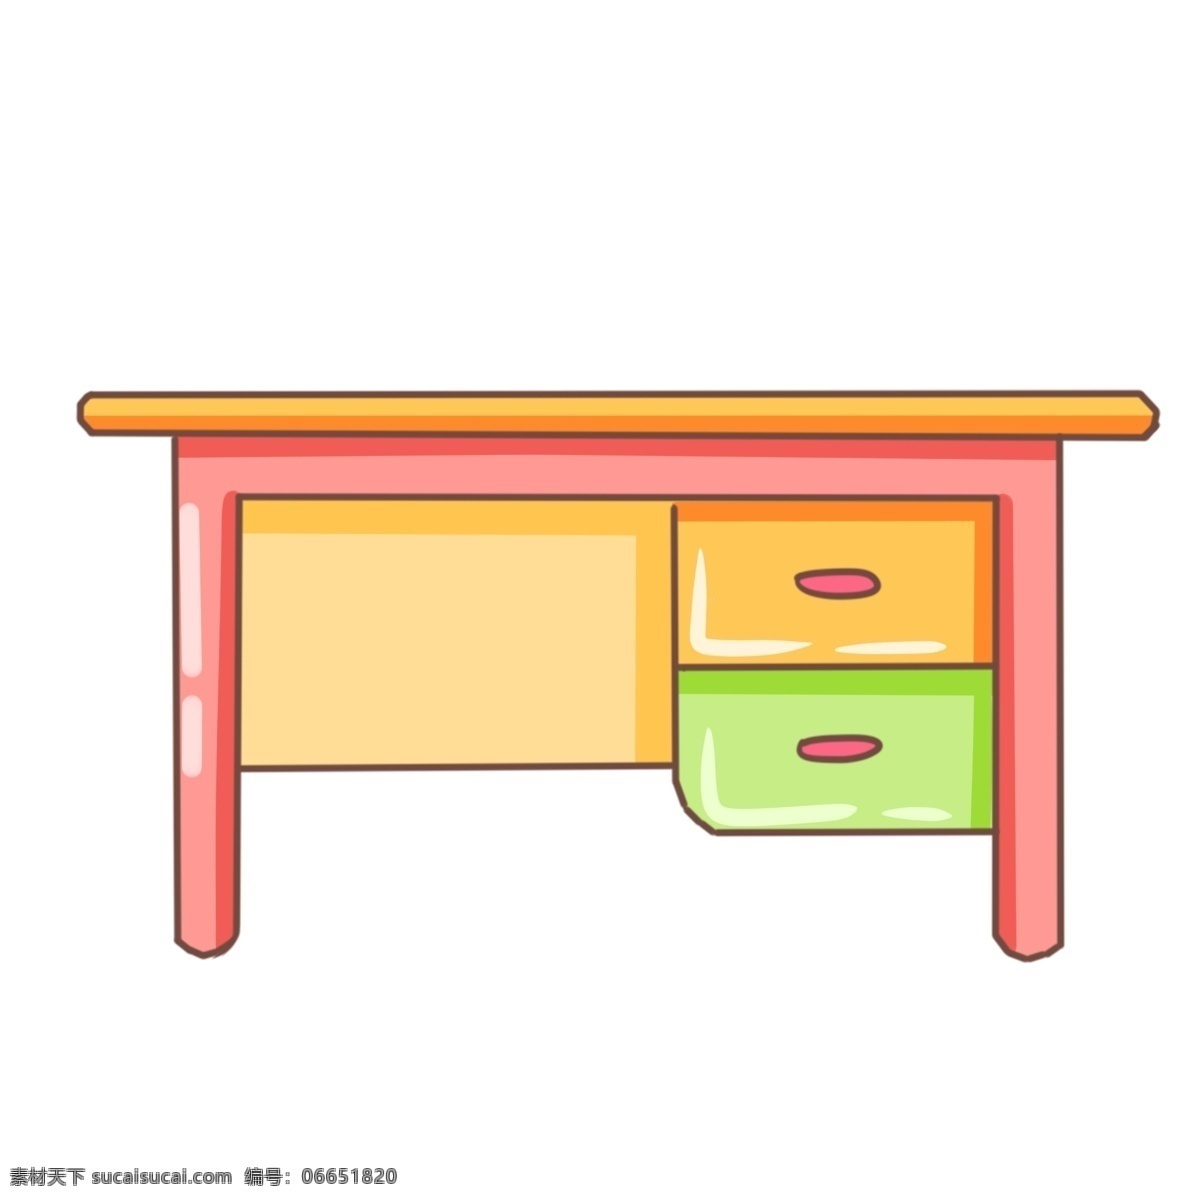 手绘 学习 课桌 插画 卡通插画 手绘桌子插画 创意家具插画 红色的课桌 绿色的抽屉 学习的课桌